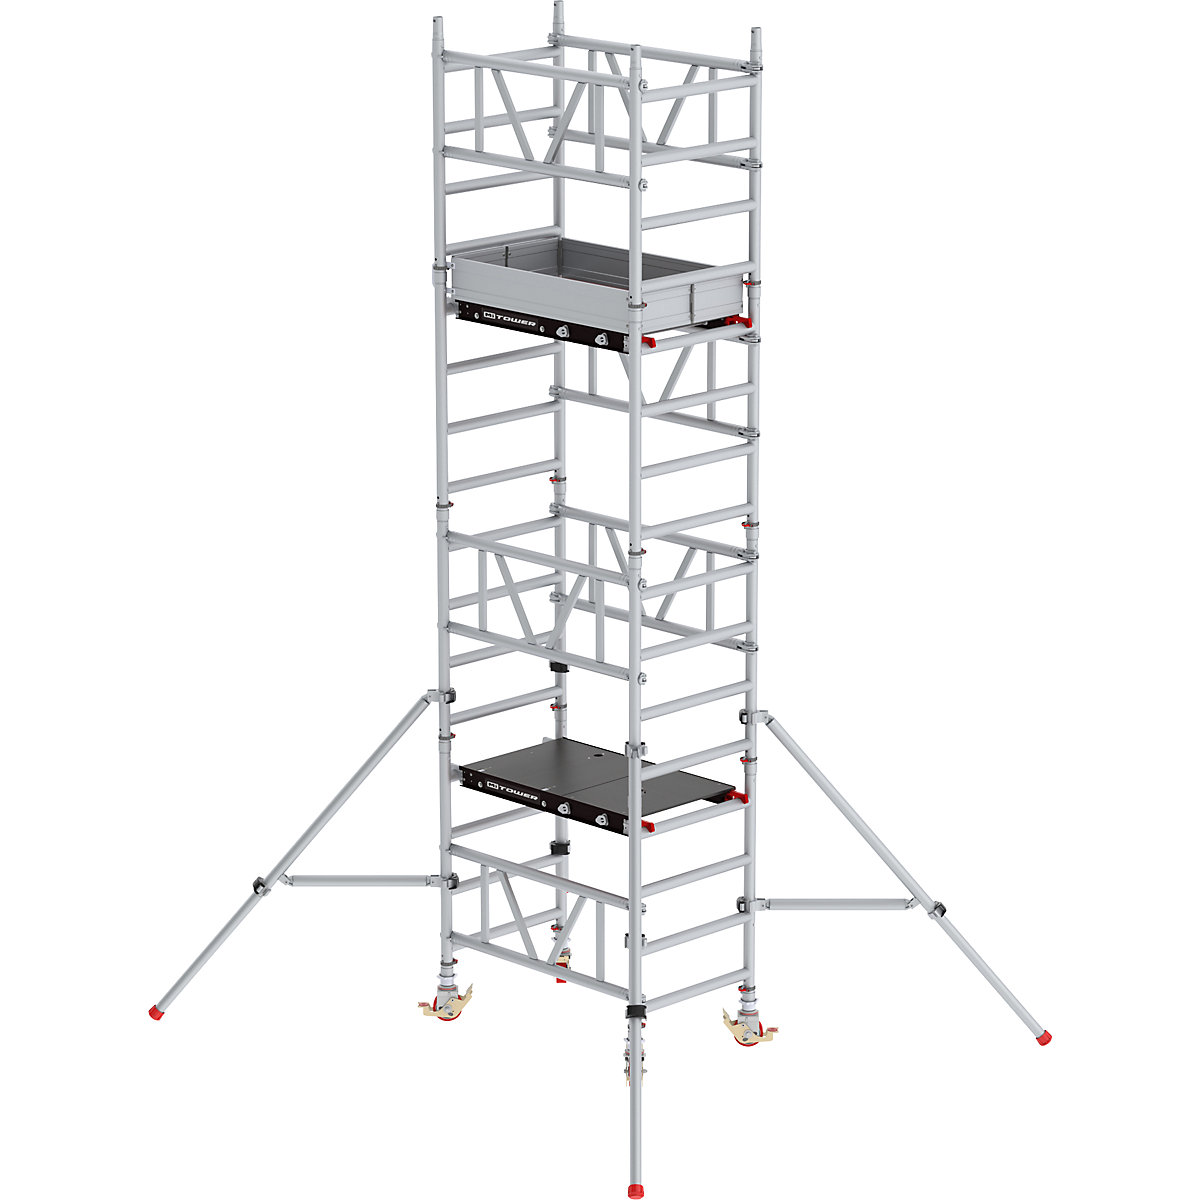 Schnellbau-Fahrgerüst MiTOWER Standard Altrex, Fiber-Deck®-Plattform, LxB 1200 x 750 mm, Arbeitshöhe 5 m